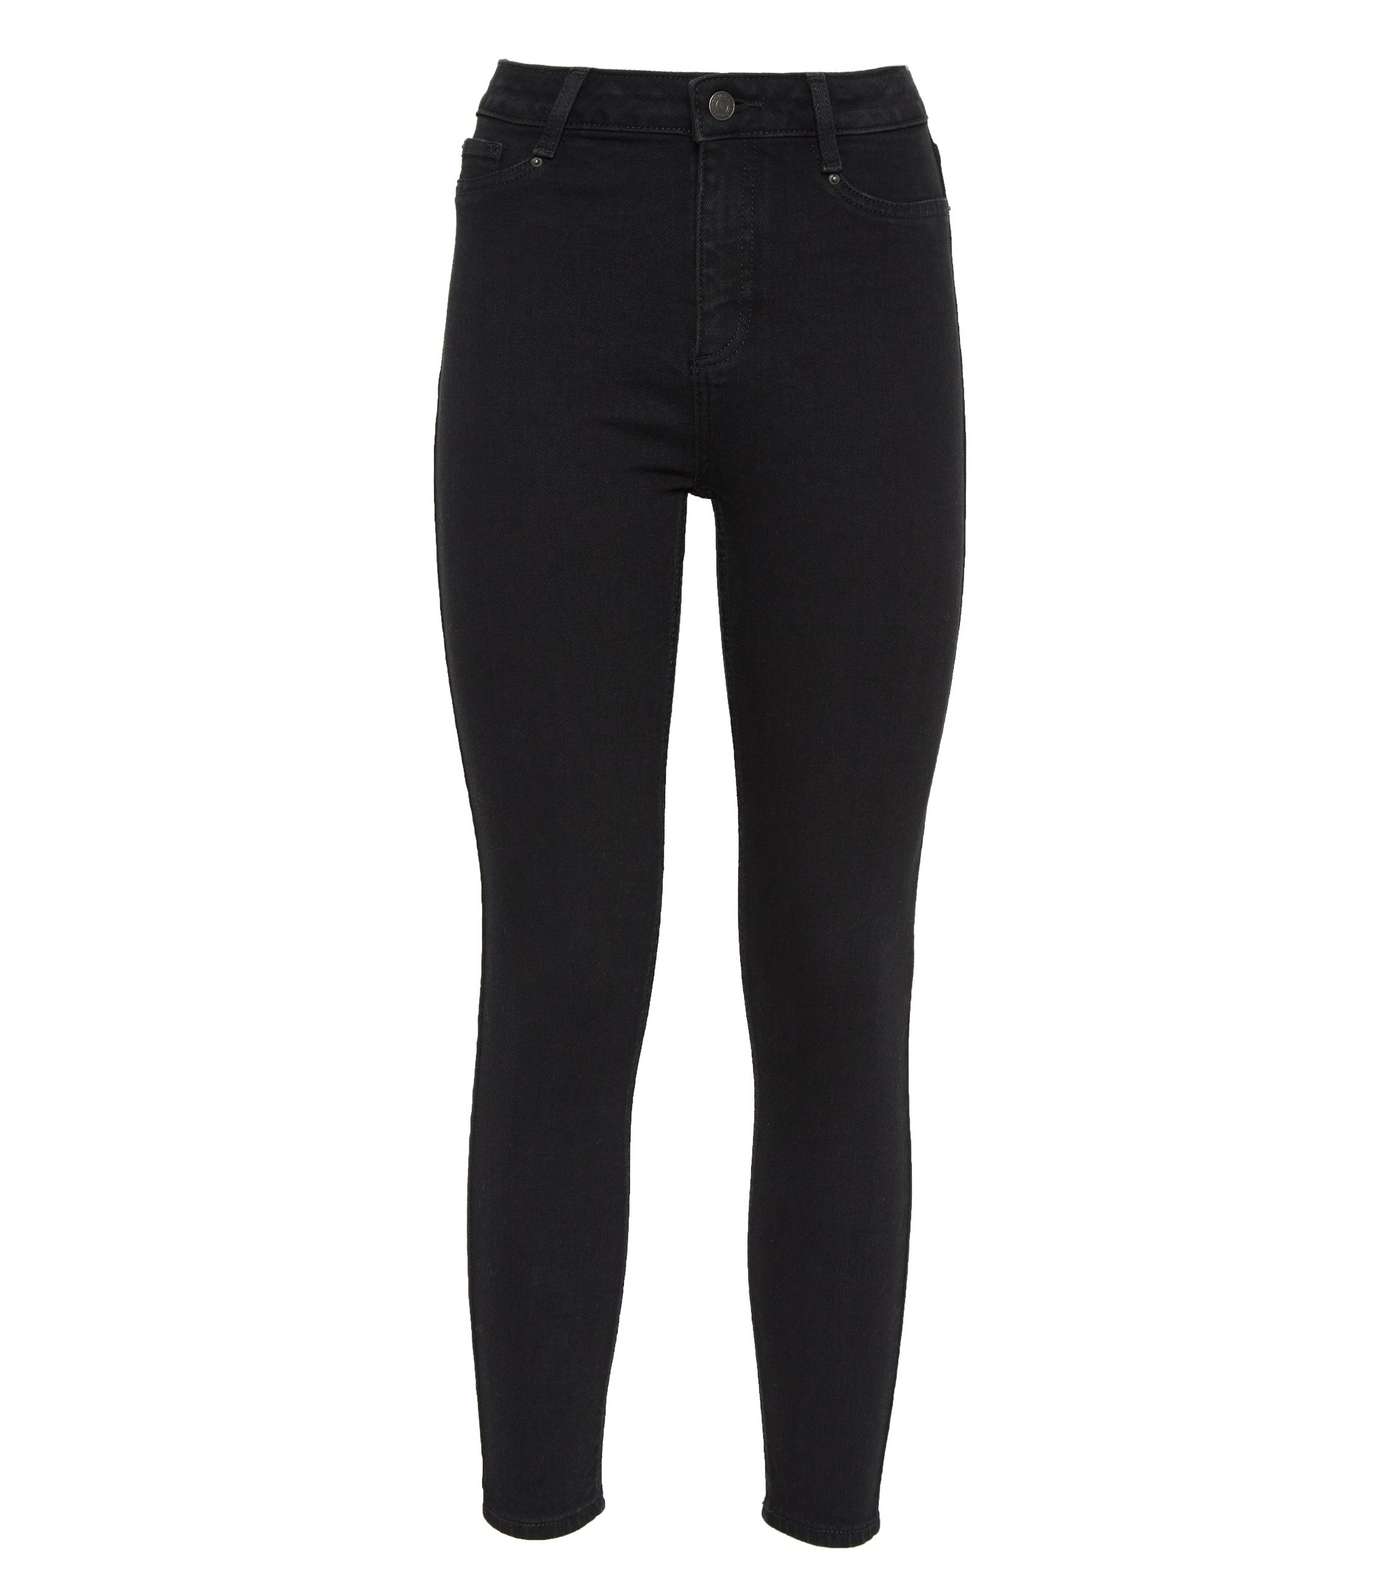 Petite Black High Waist Hallie Super Skinny Jeans Image 5